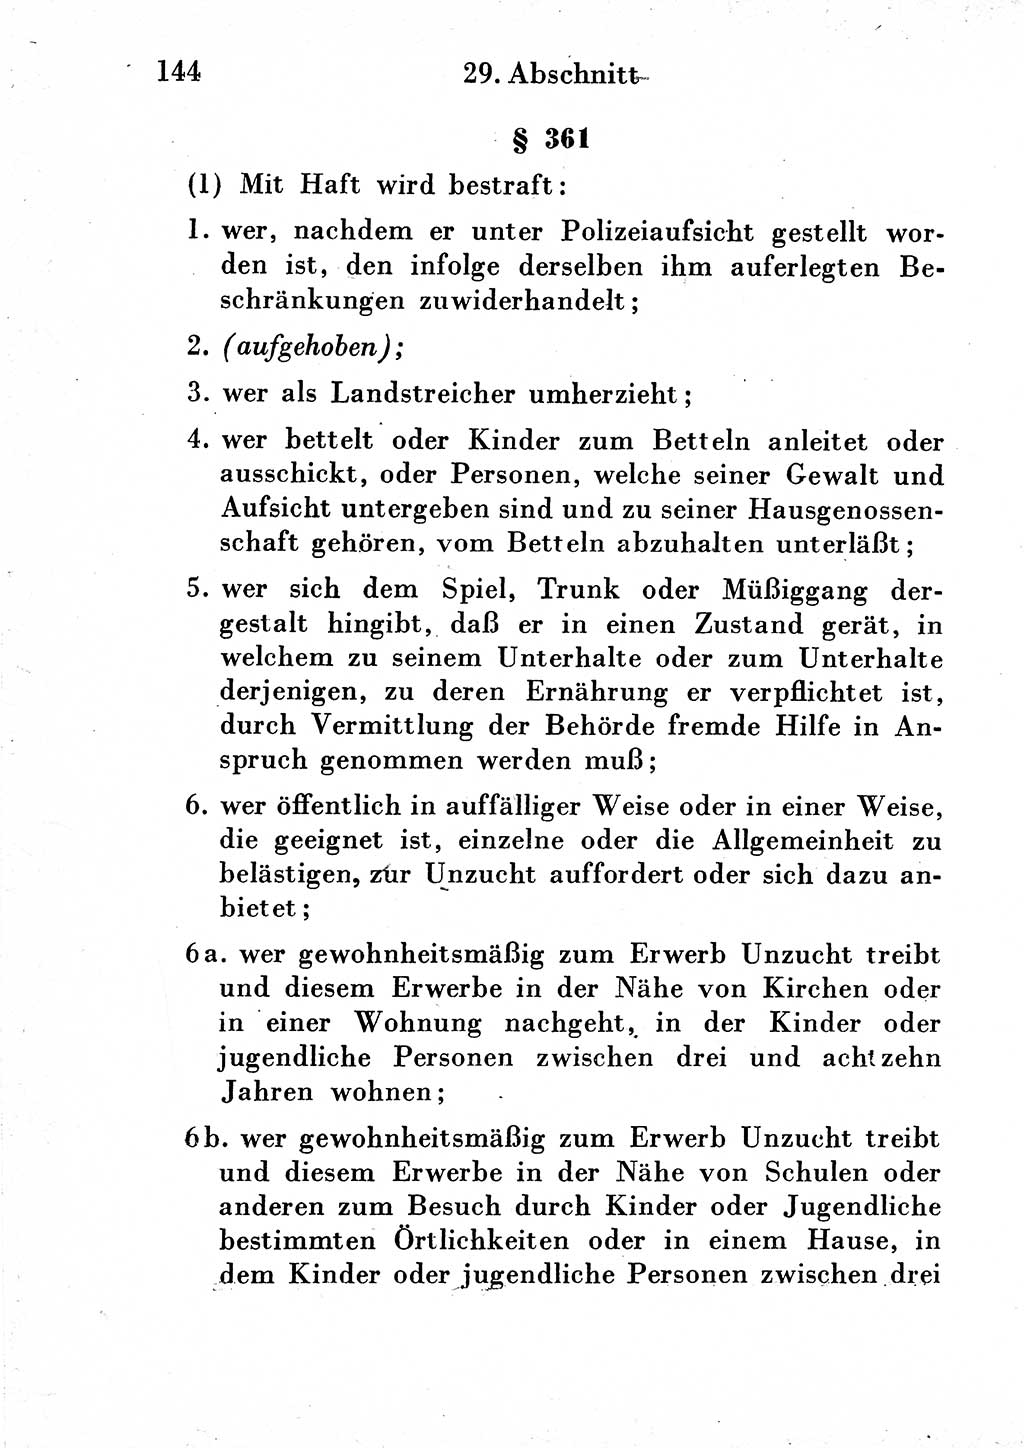 Strafgesetzbuch (StGB) und andere Strafgesetze [Deutsche Demokratische Republik (DDR)] 1954, Seite 144 (StGB Strafges. DDR 1954, S. 144)